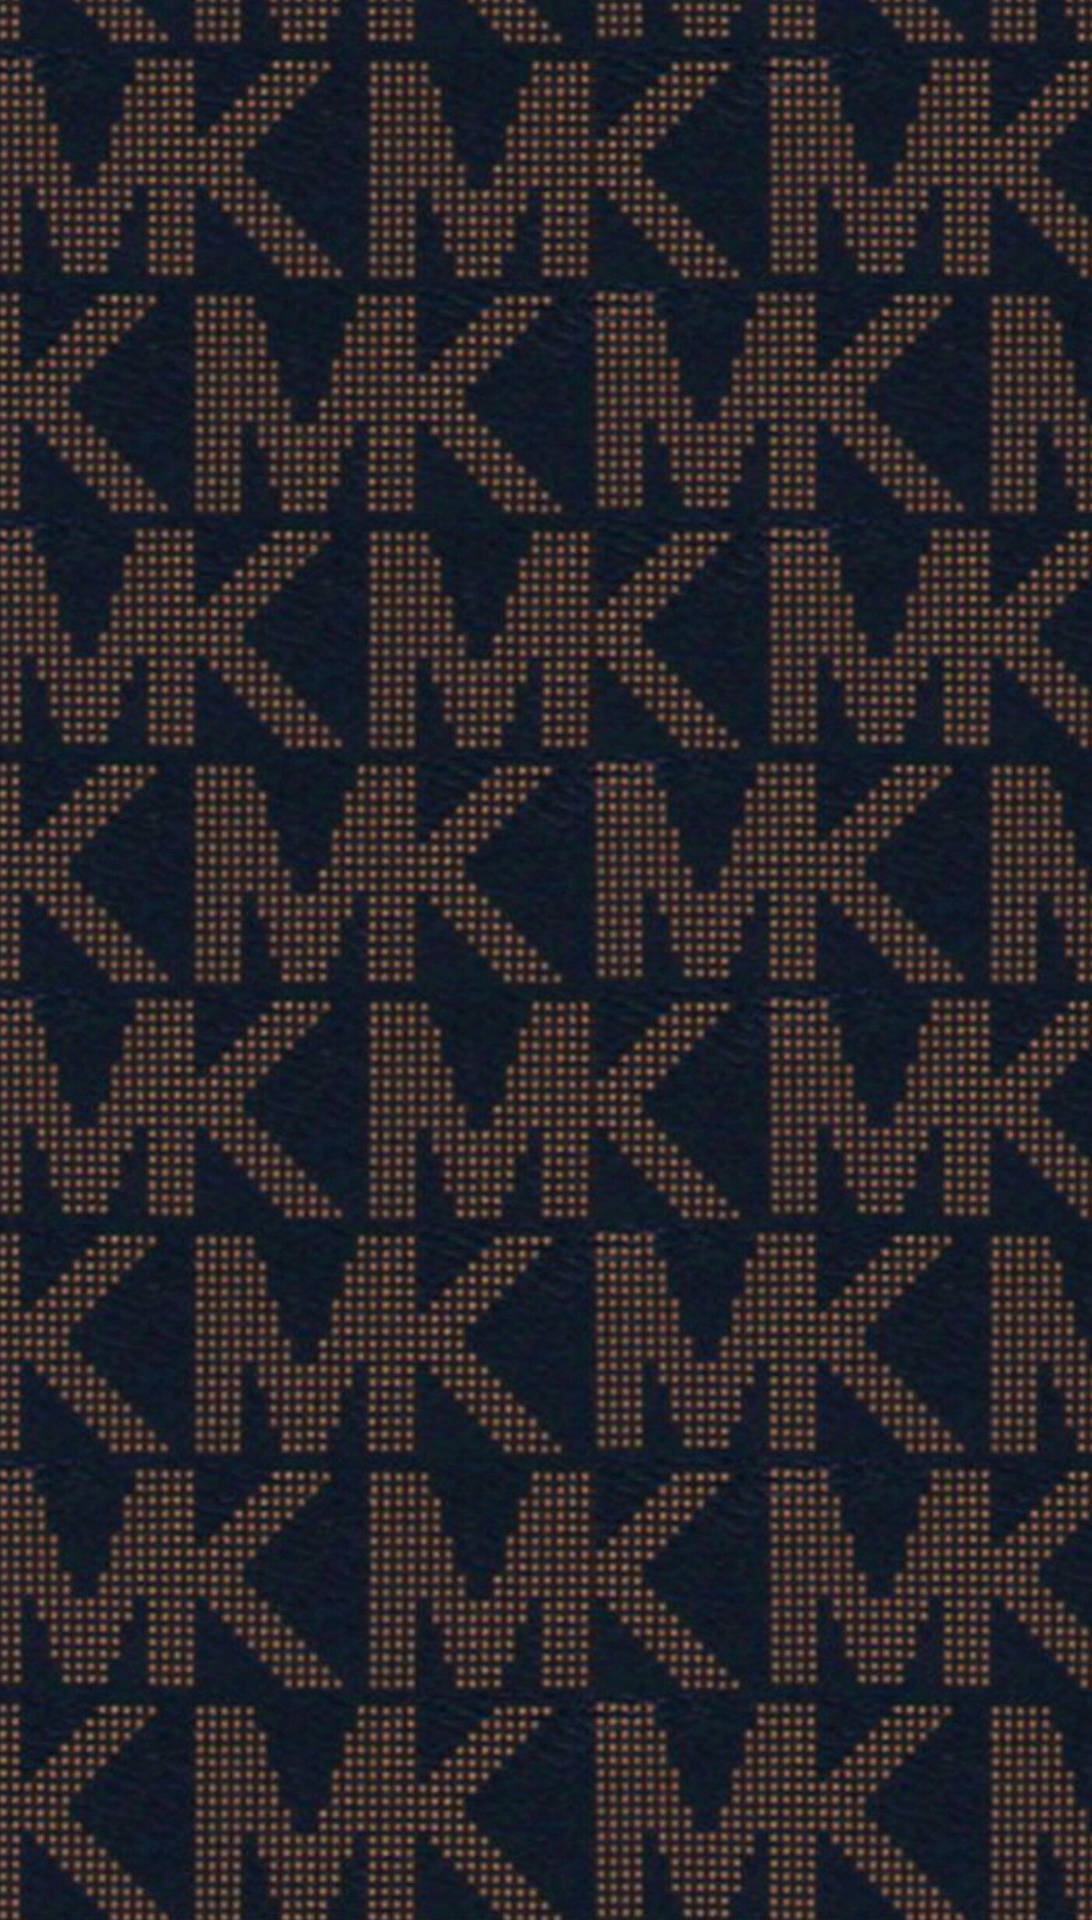 Michael Kors Classic Mk Initials